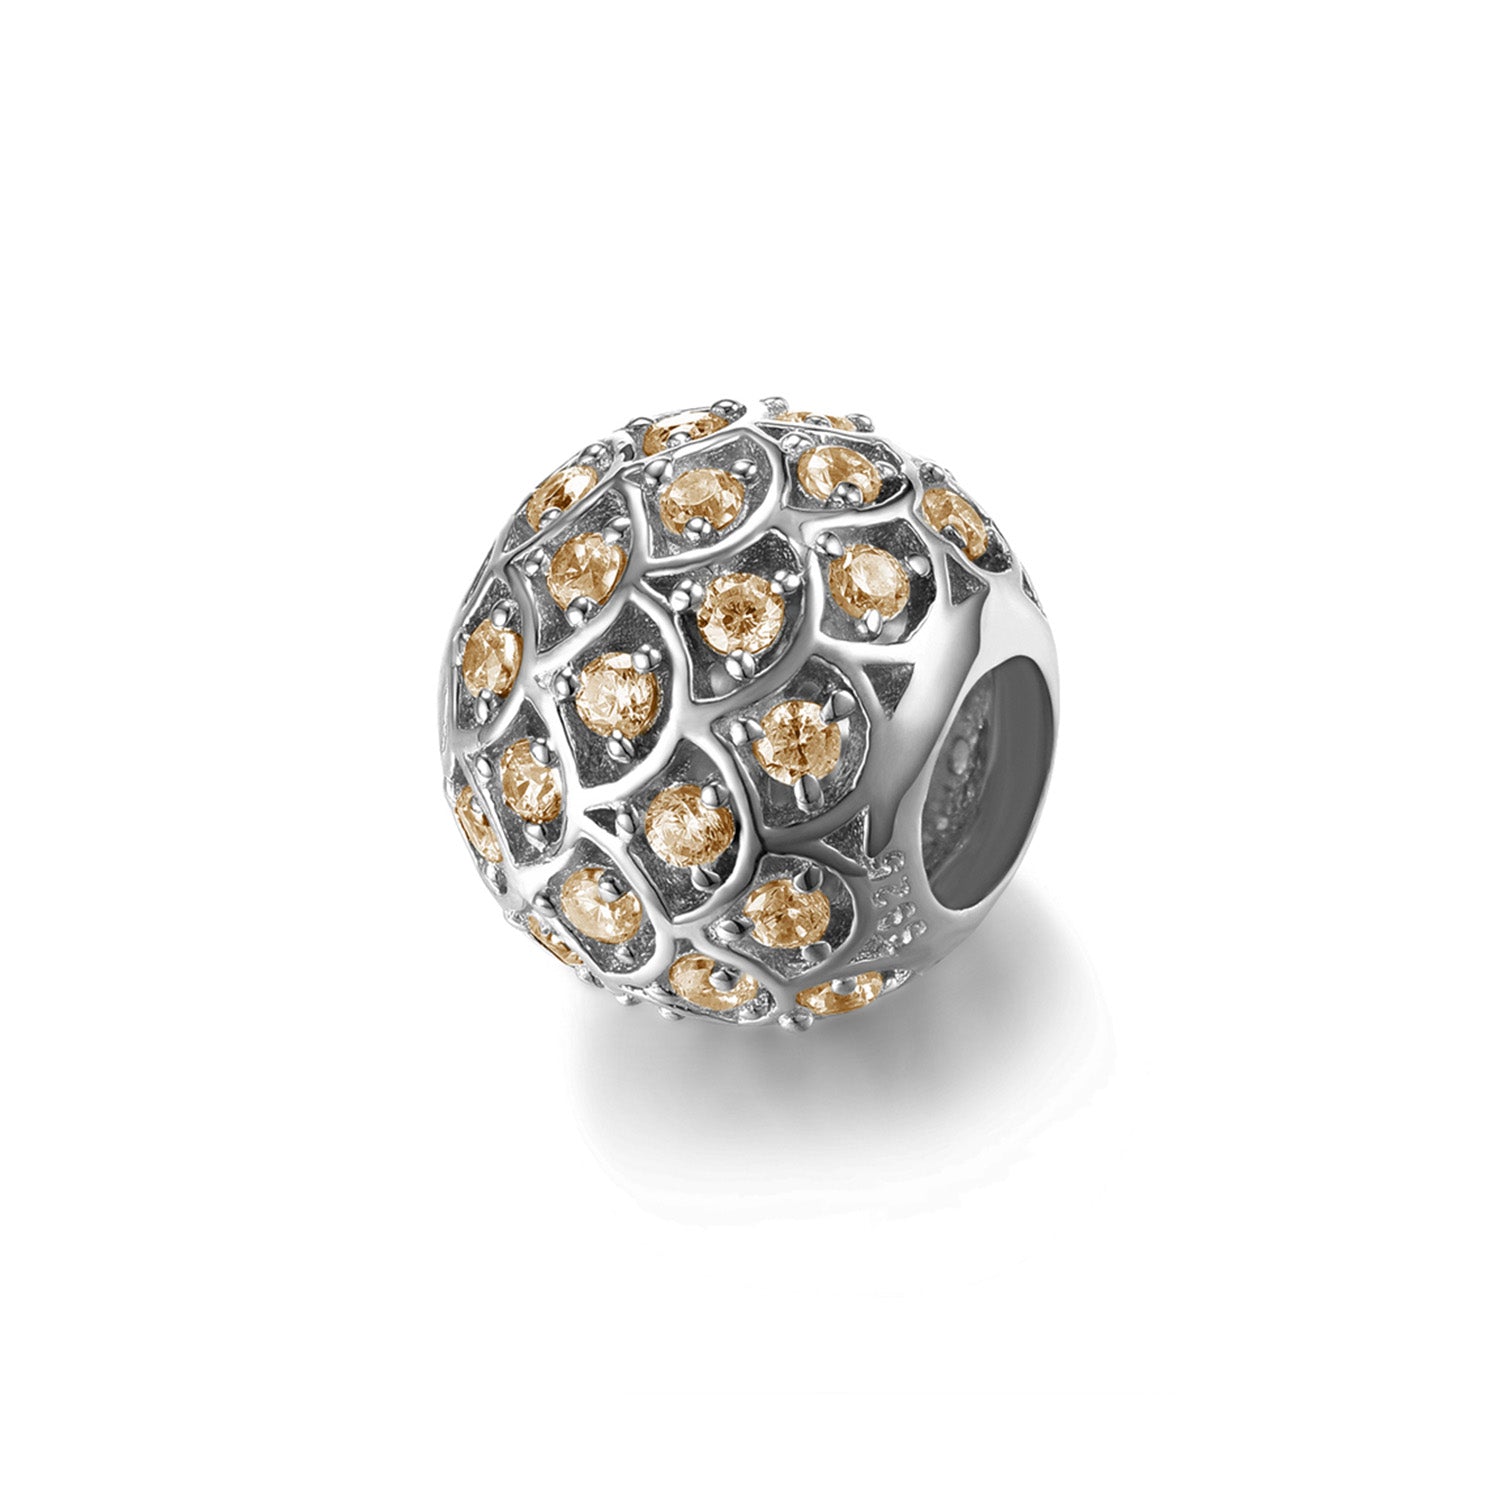 Jewdii 925 純銀時尚吊飾黃色方晶鋯石適合歐式串珠腕帶手鍊或項鍊